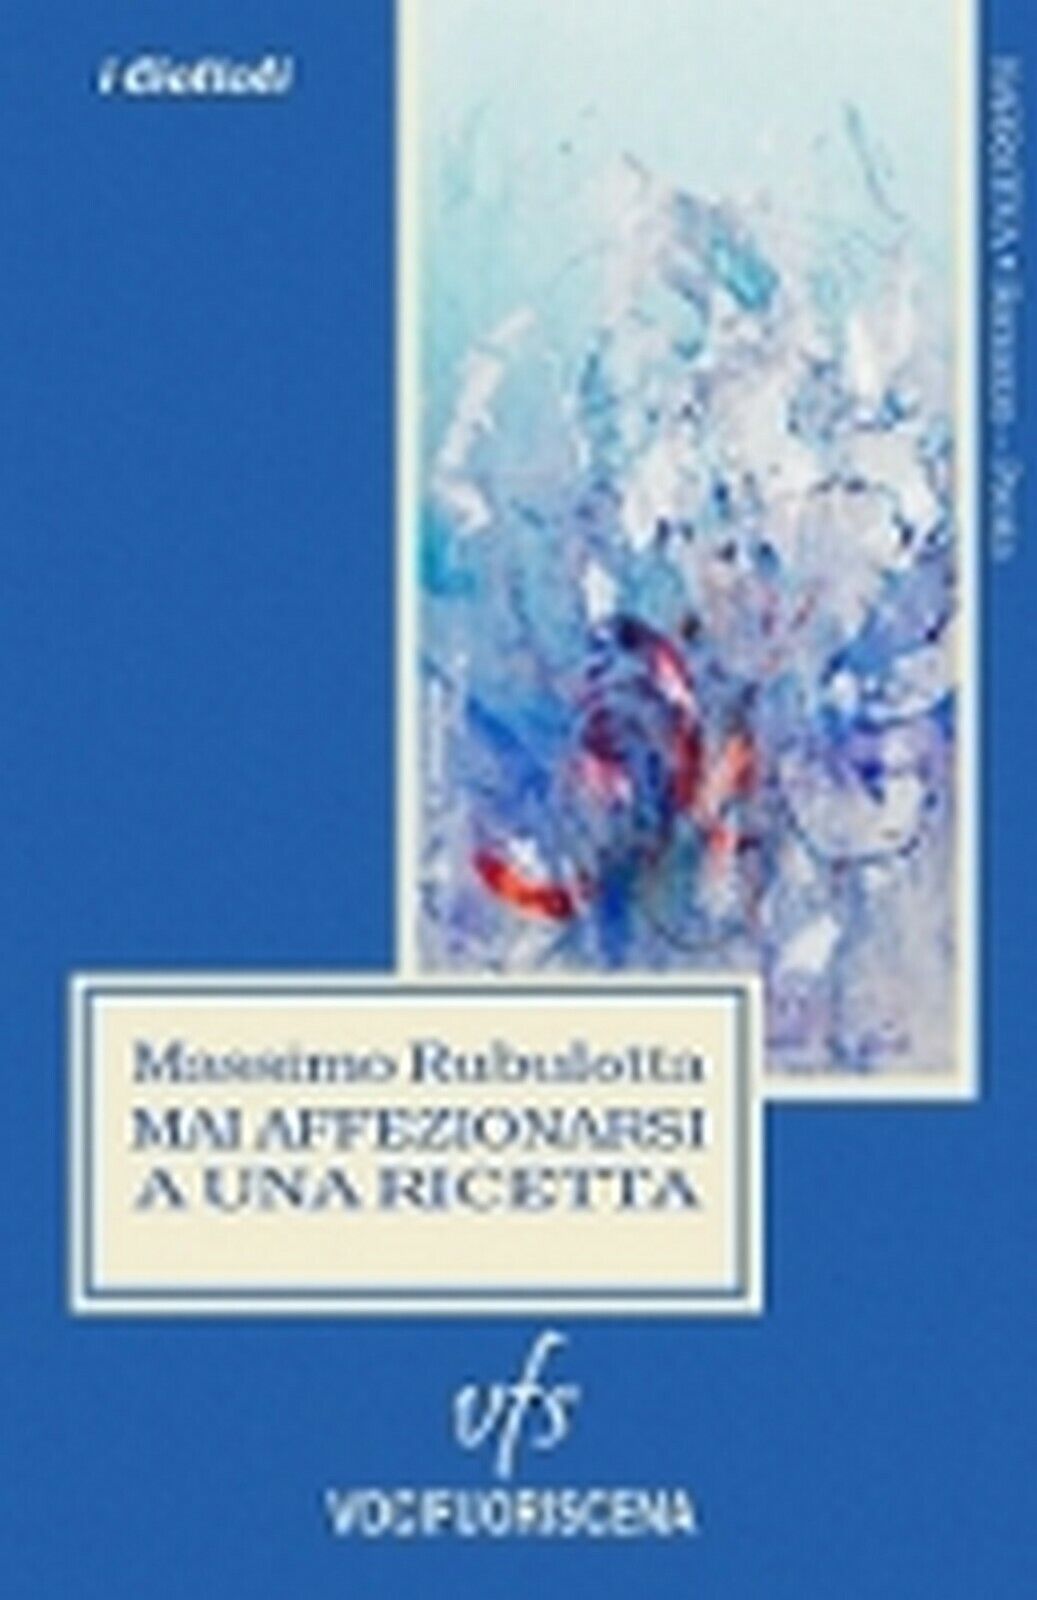 MAI AFFEZIONARSI A UNA RICETTA  di Massimo Rubulotta,  2018,  Vocifuoriscena libro usato